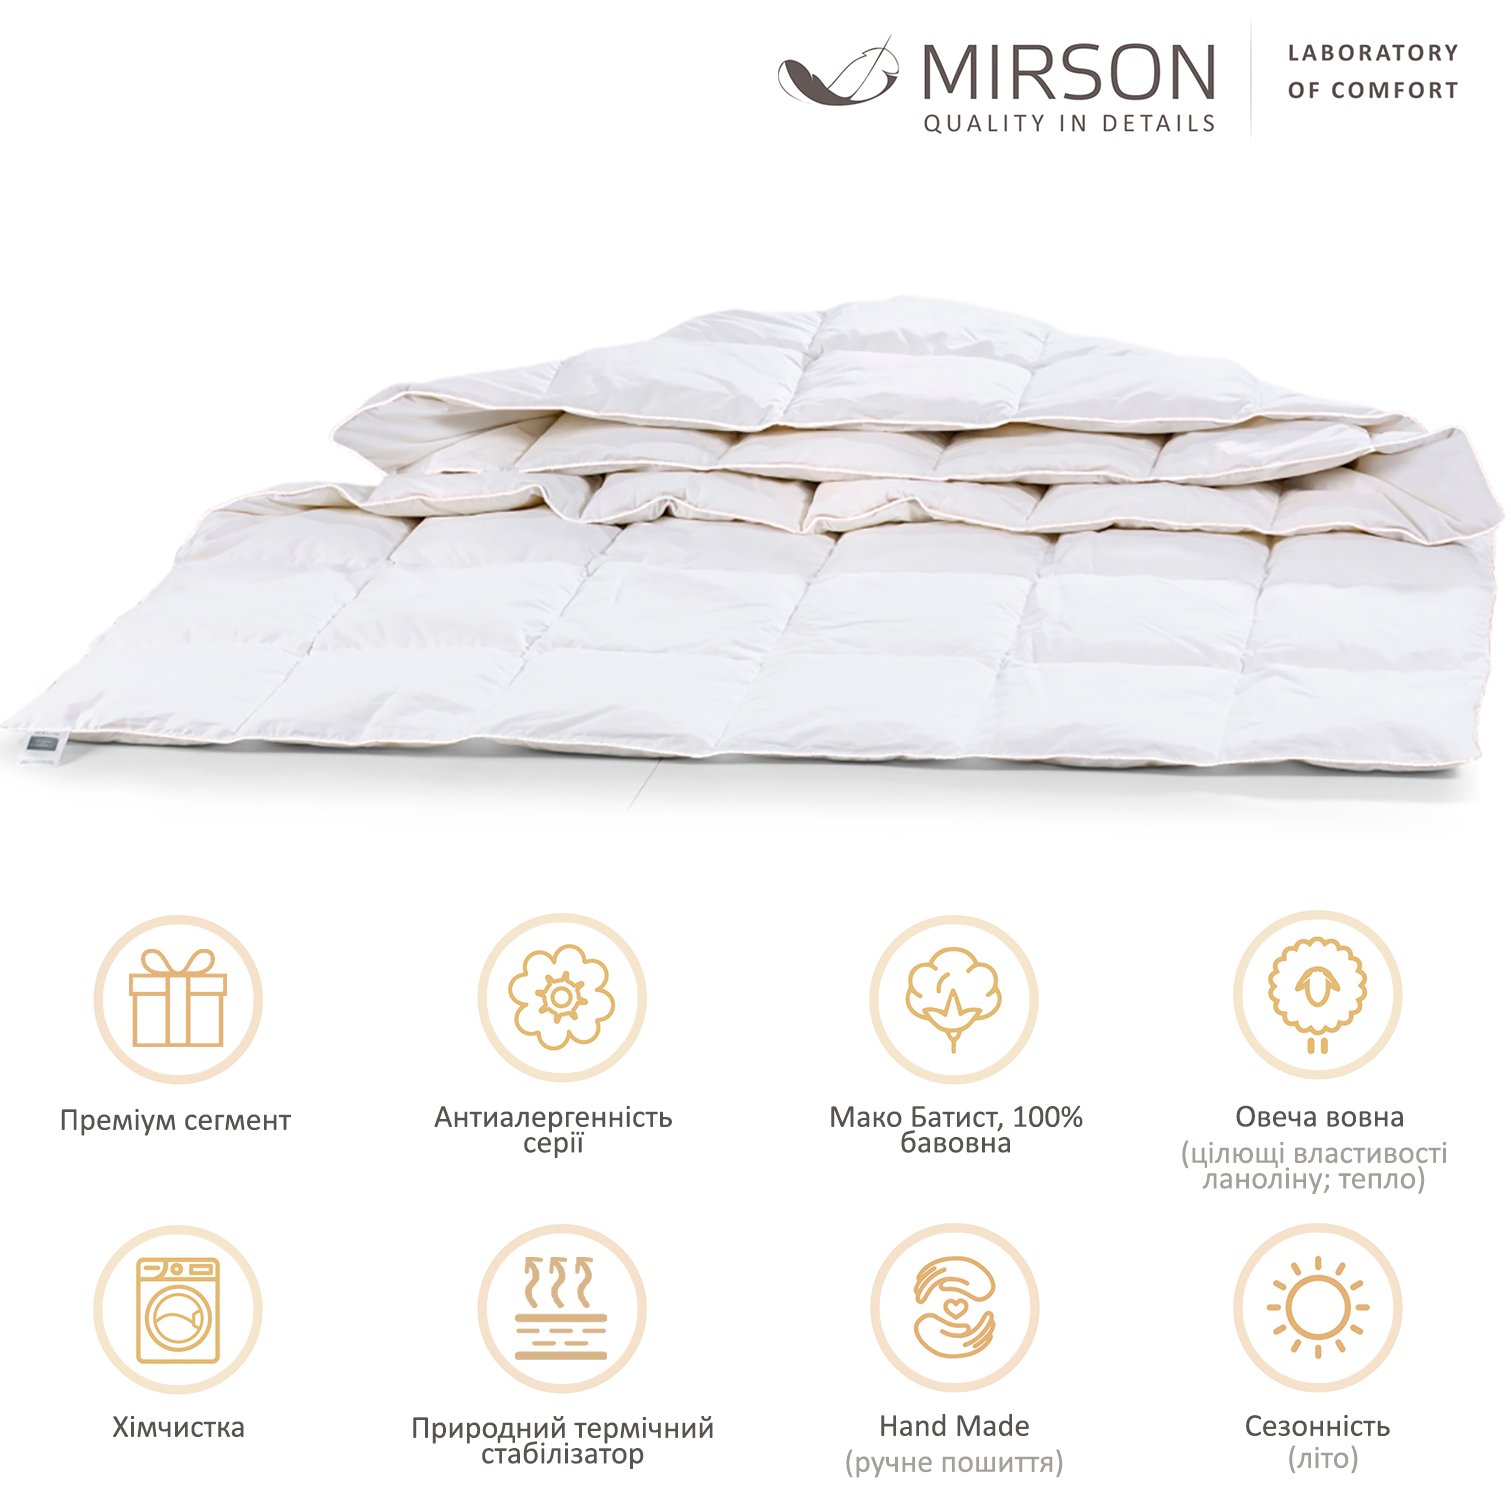 Одеяло шерстяное MirSon Luxury Exclusive №1363, летнее, 200x220 см, белое - фото 4